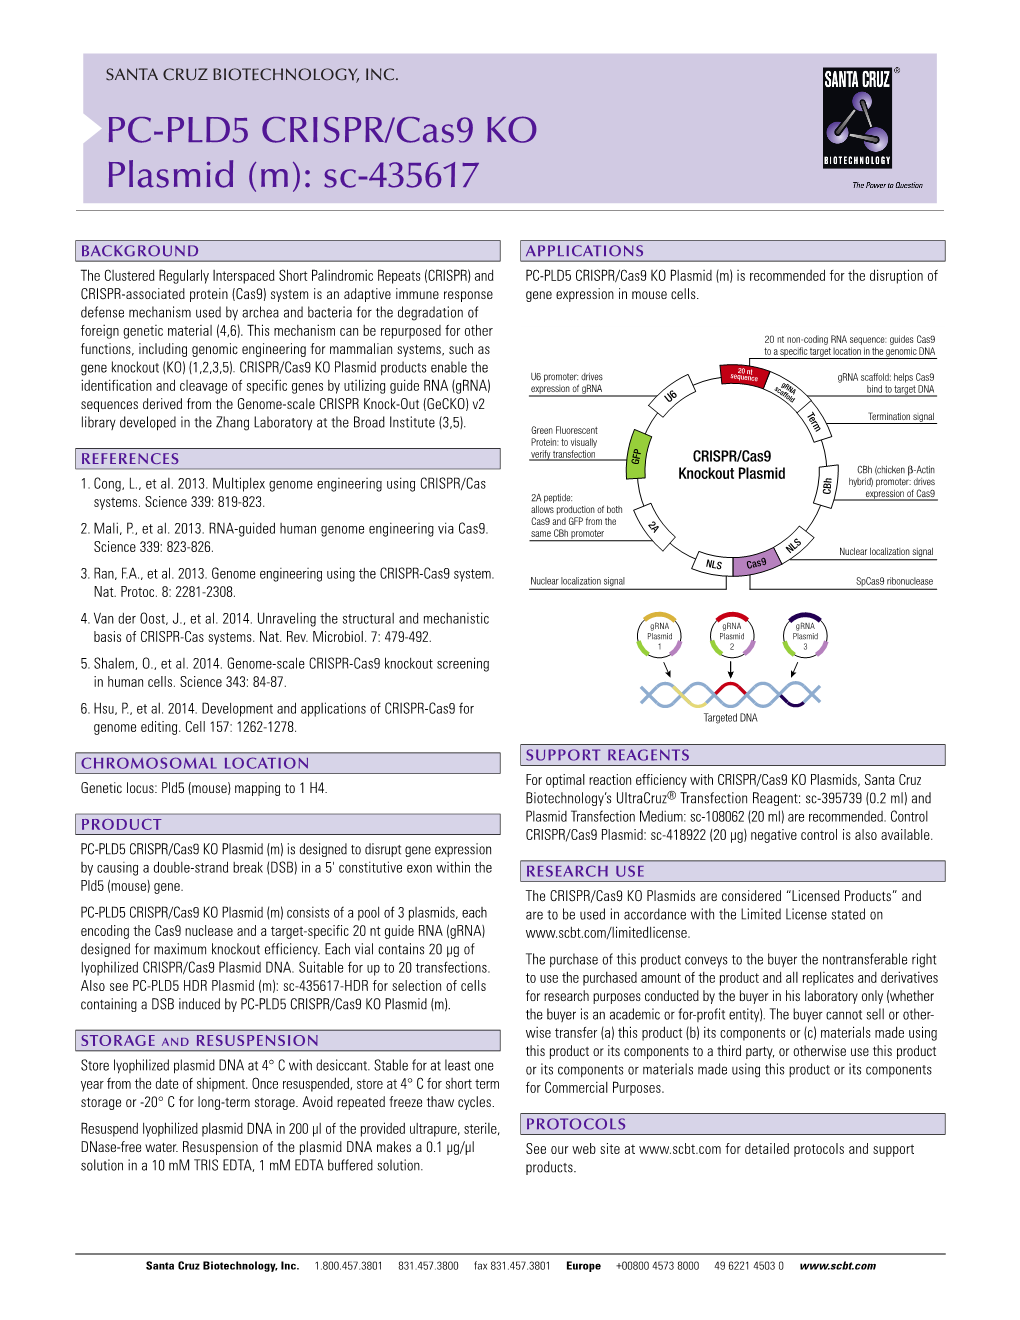 PC-PLD5 CRISPR/Cas9 KO Plasmid (M): Sc-435617